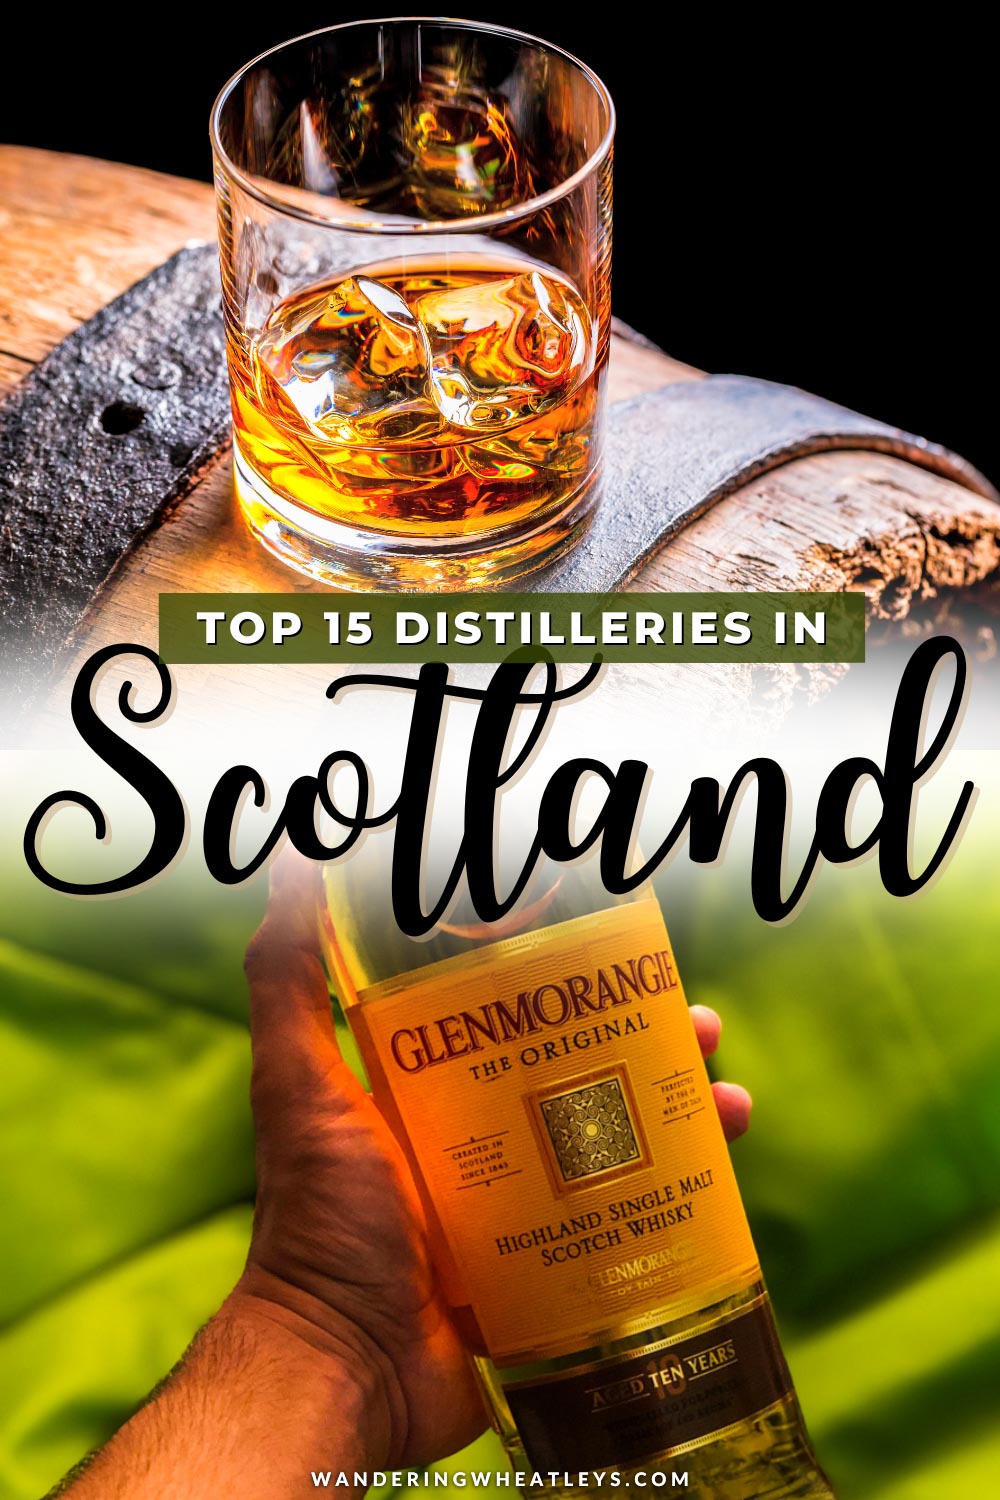 The Best Distilleries in Scotland